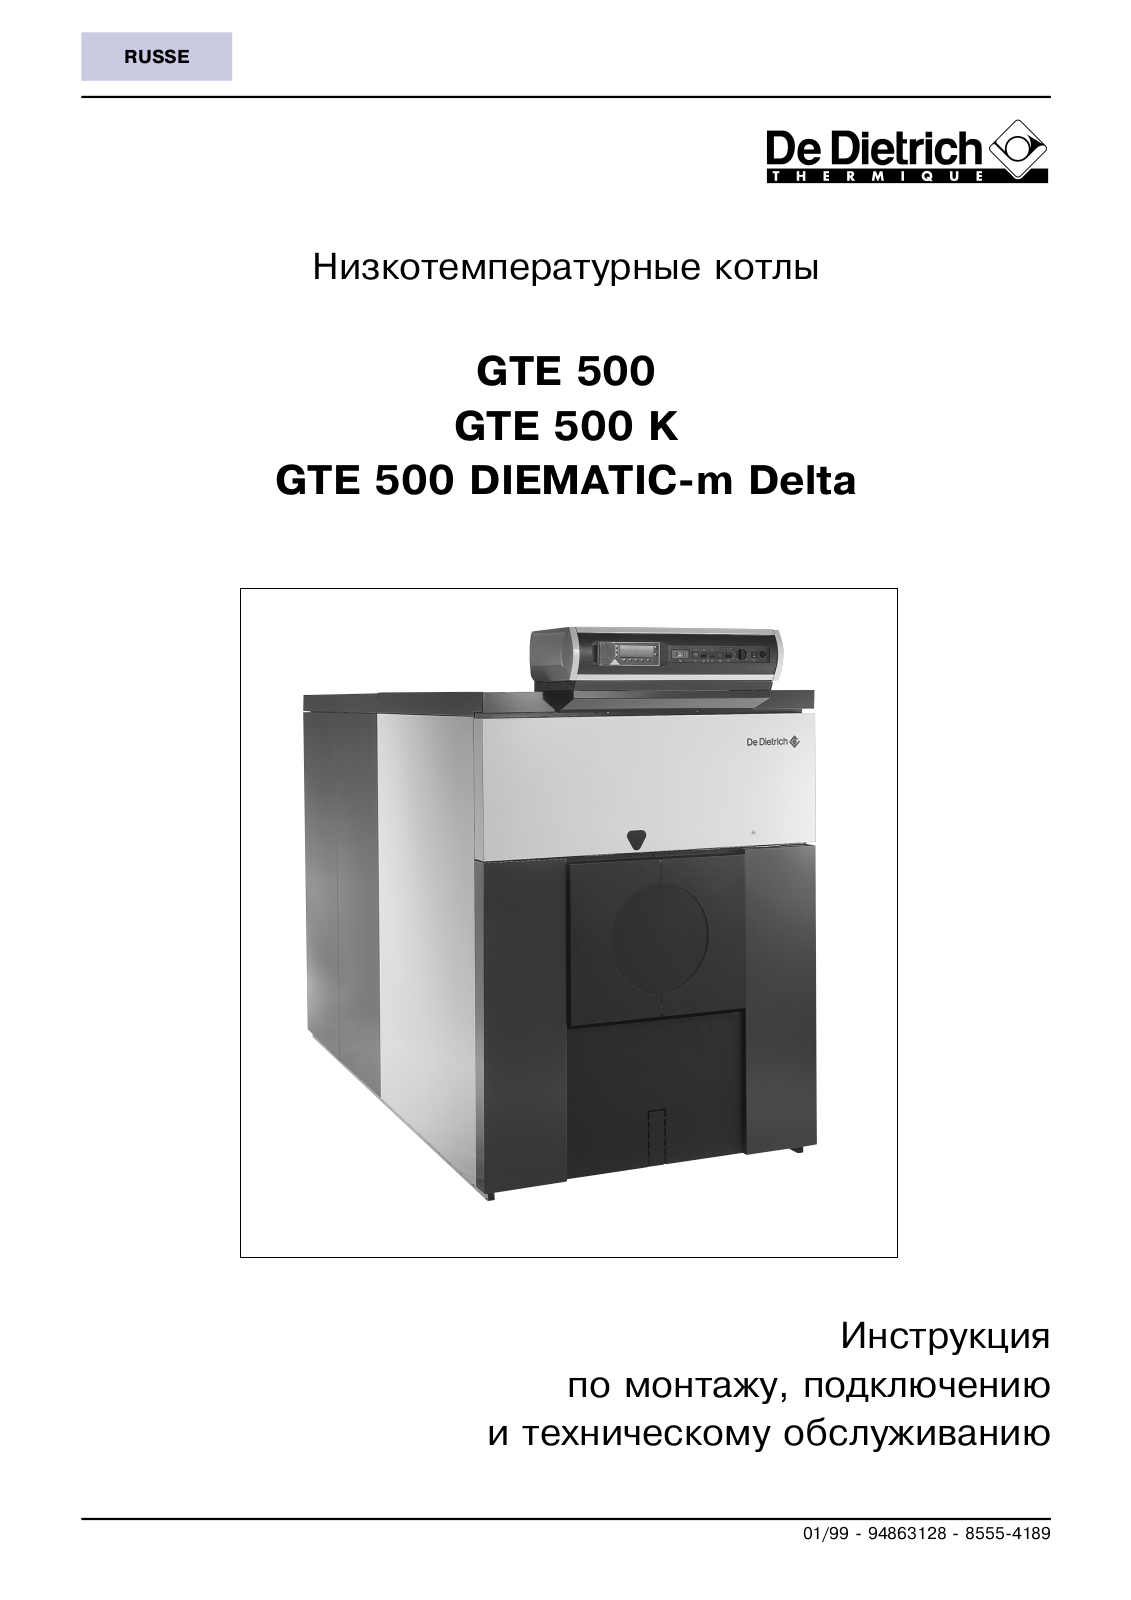 De dietrich GT 530-12 User Manual